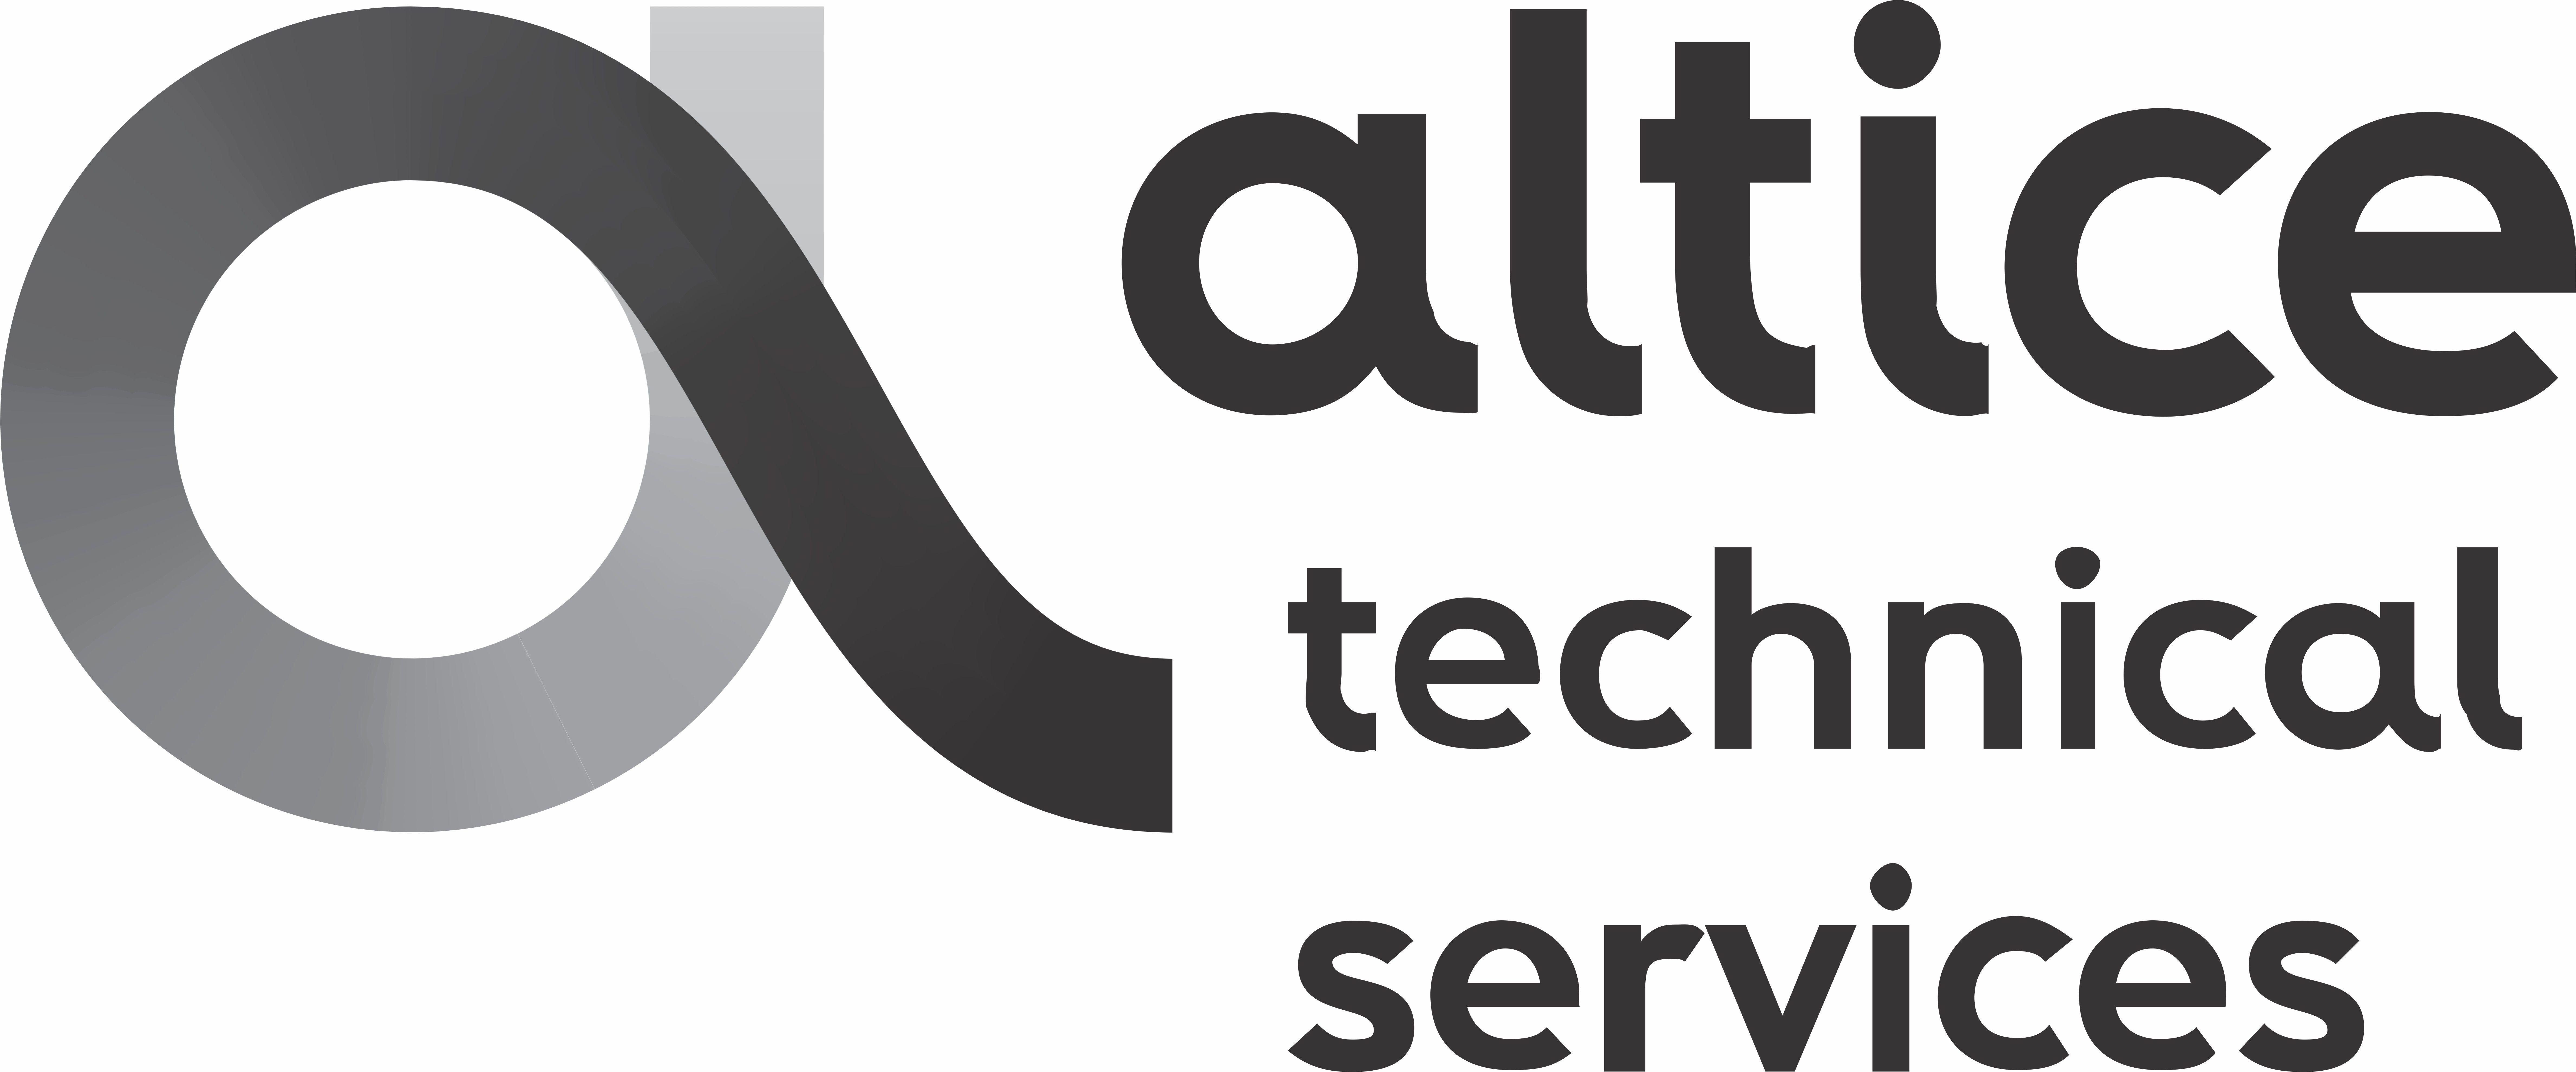 Tech Service Logo - Altice Technical Service Corporate Alliance Membership Information